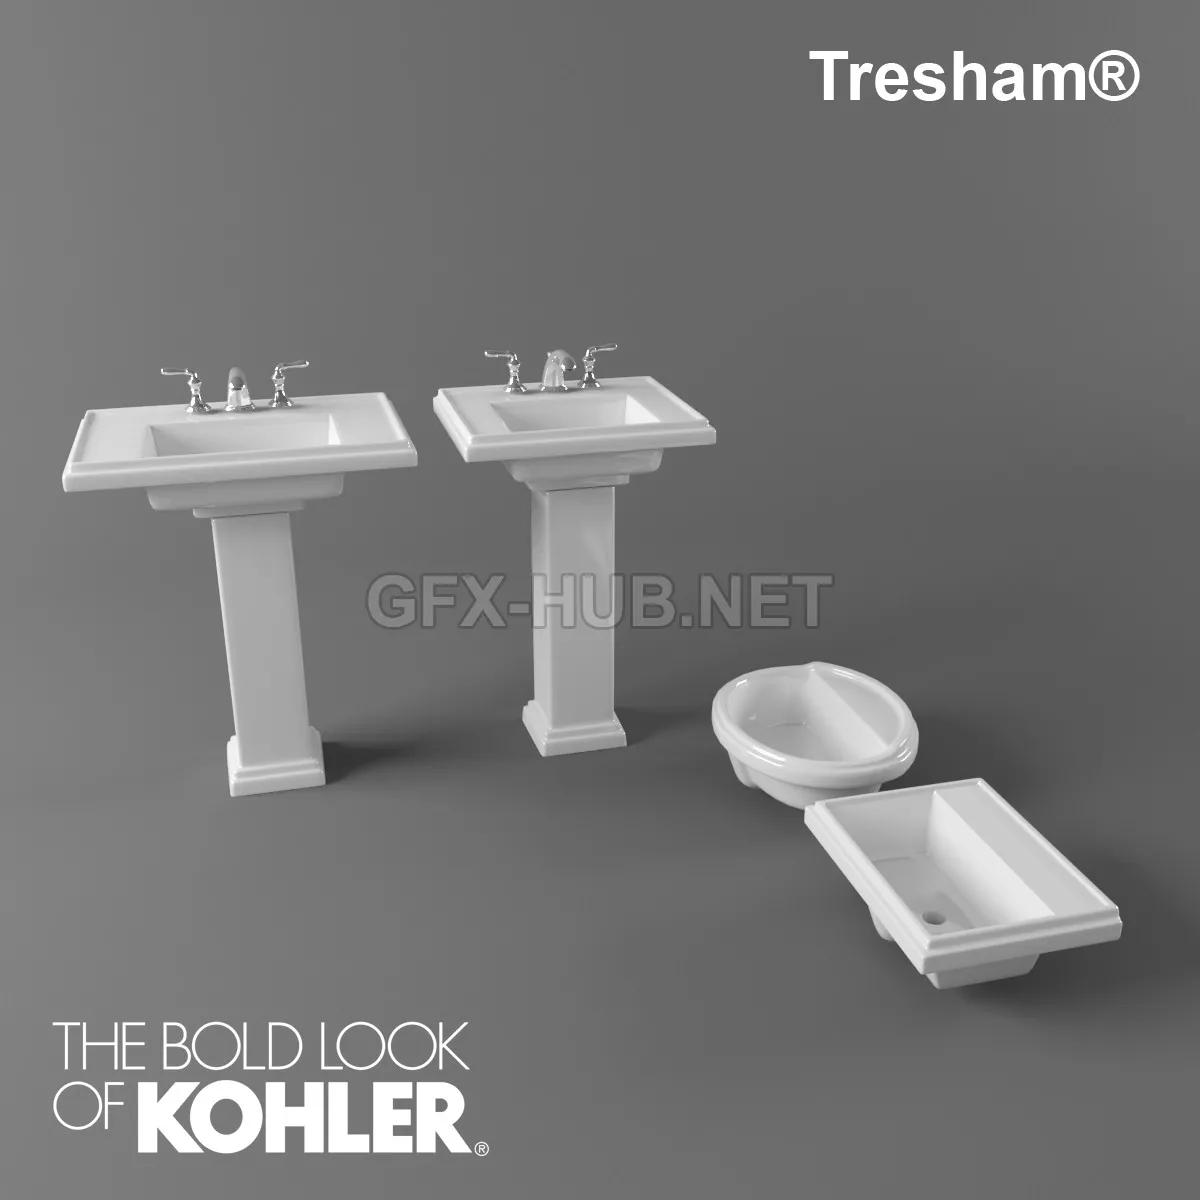 FURNITURE 3D MODELS – Kohler Tresham Sinks